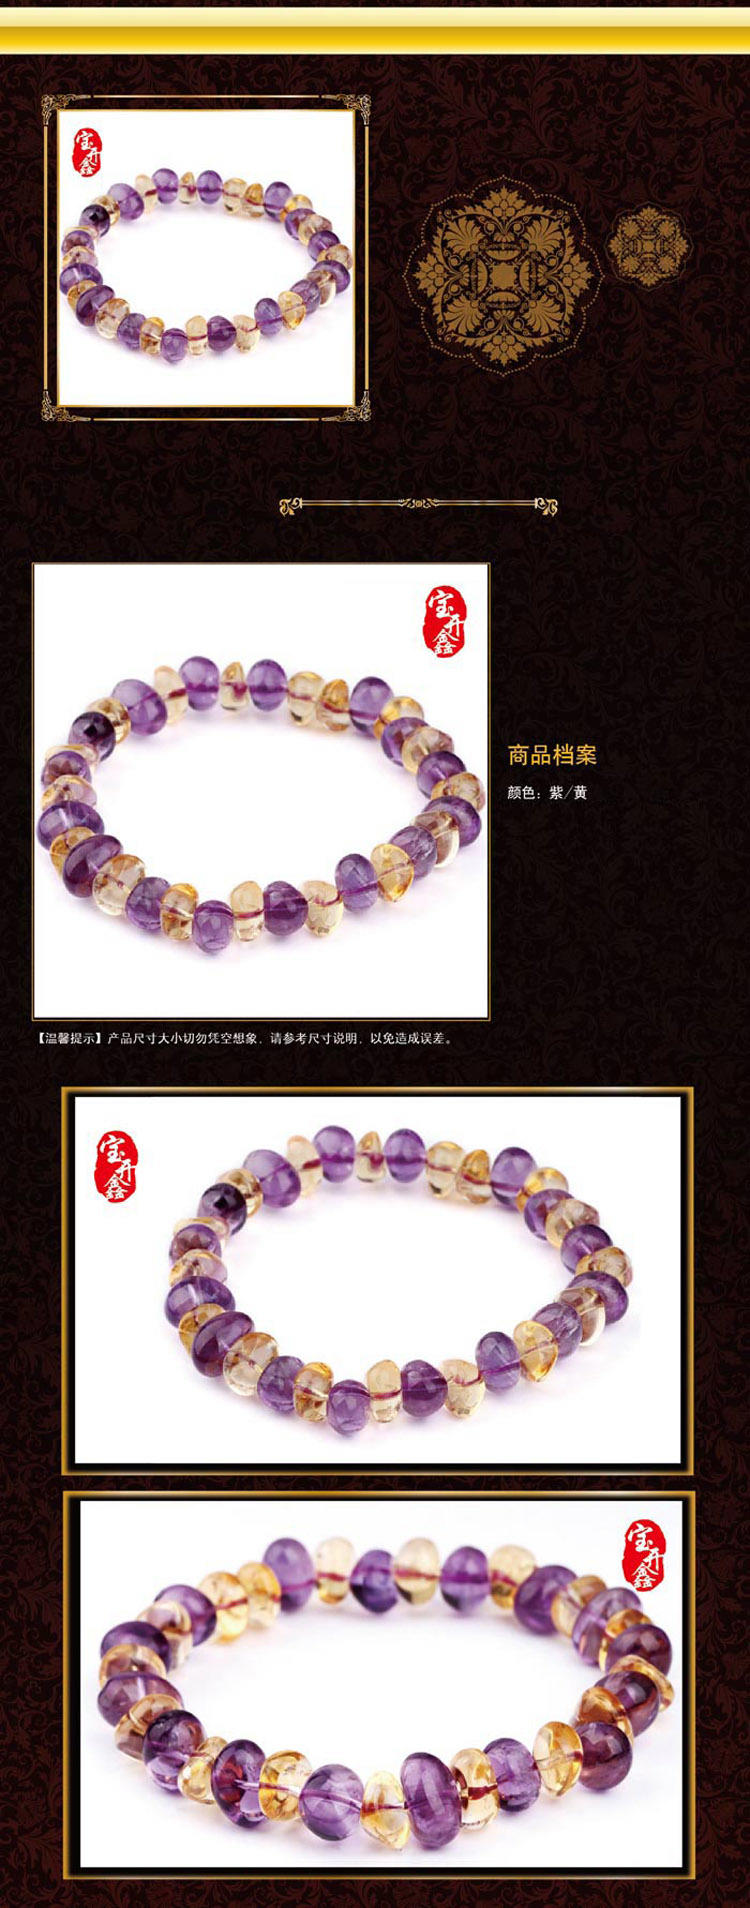 宝开鑫 天然紫黄晶异型珠手链